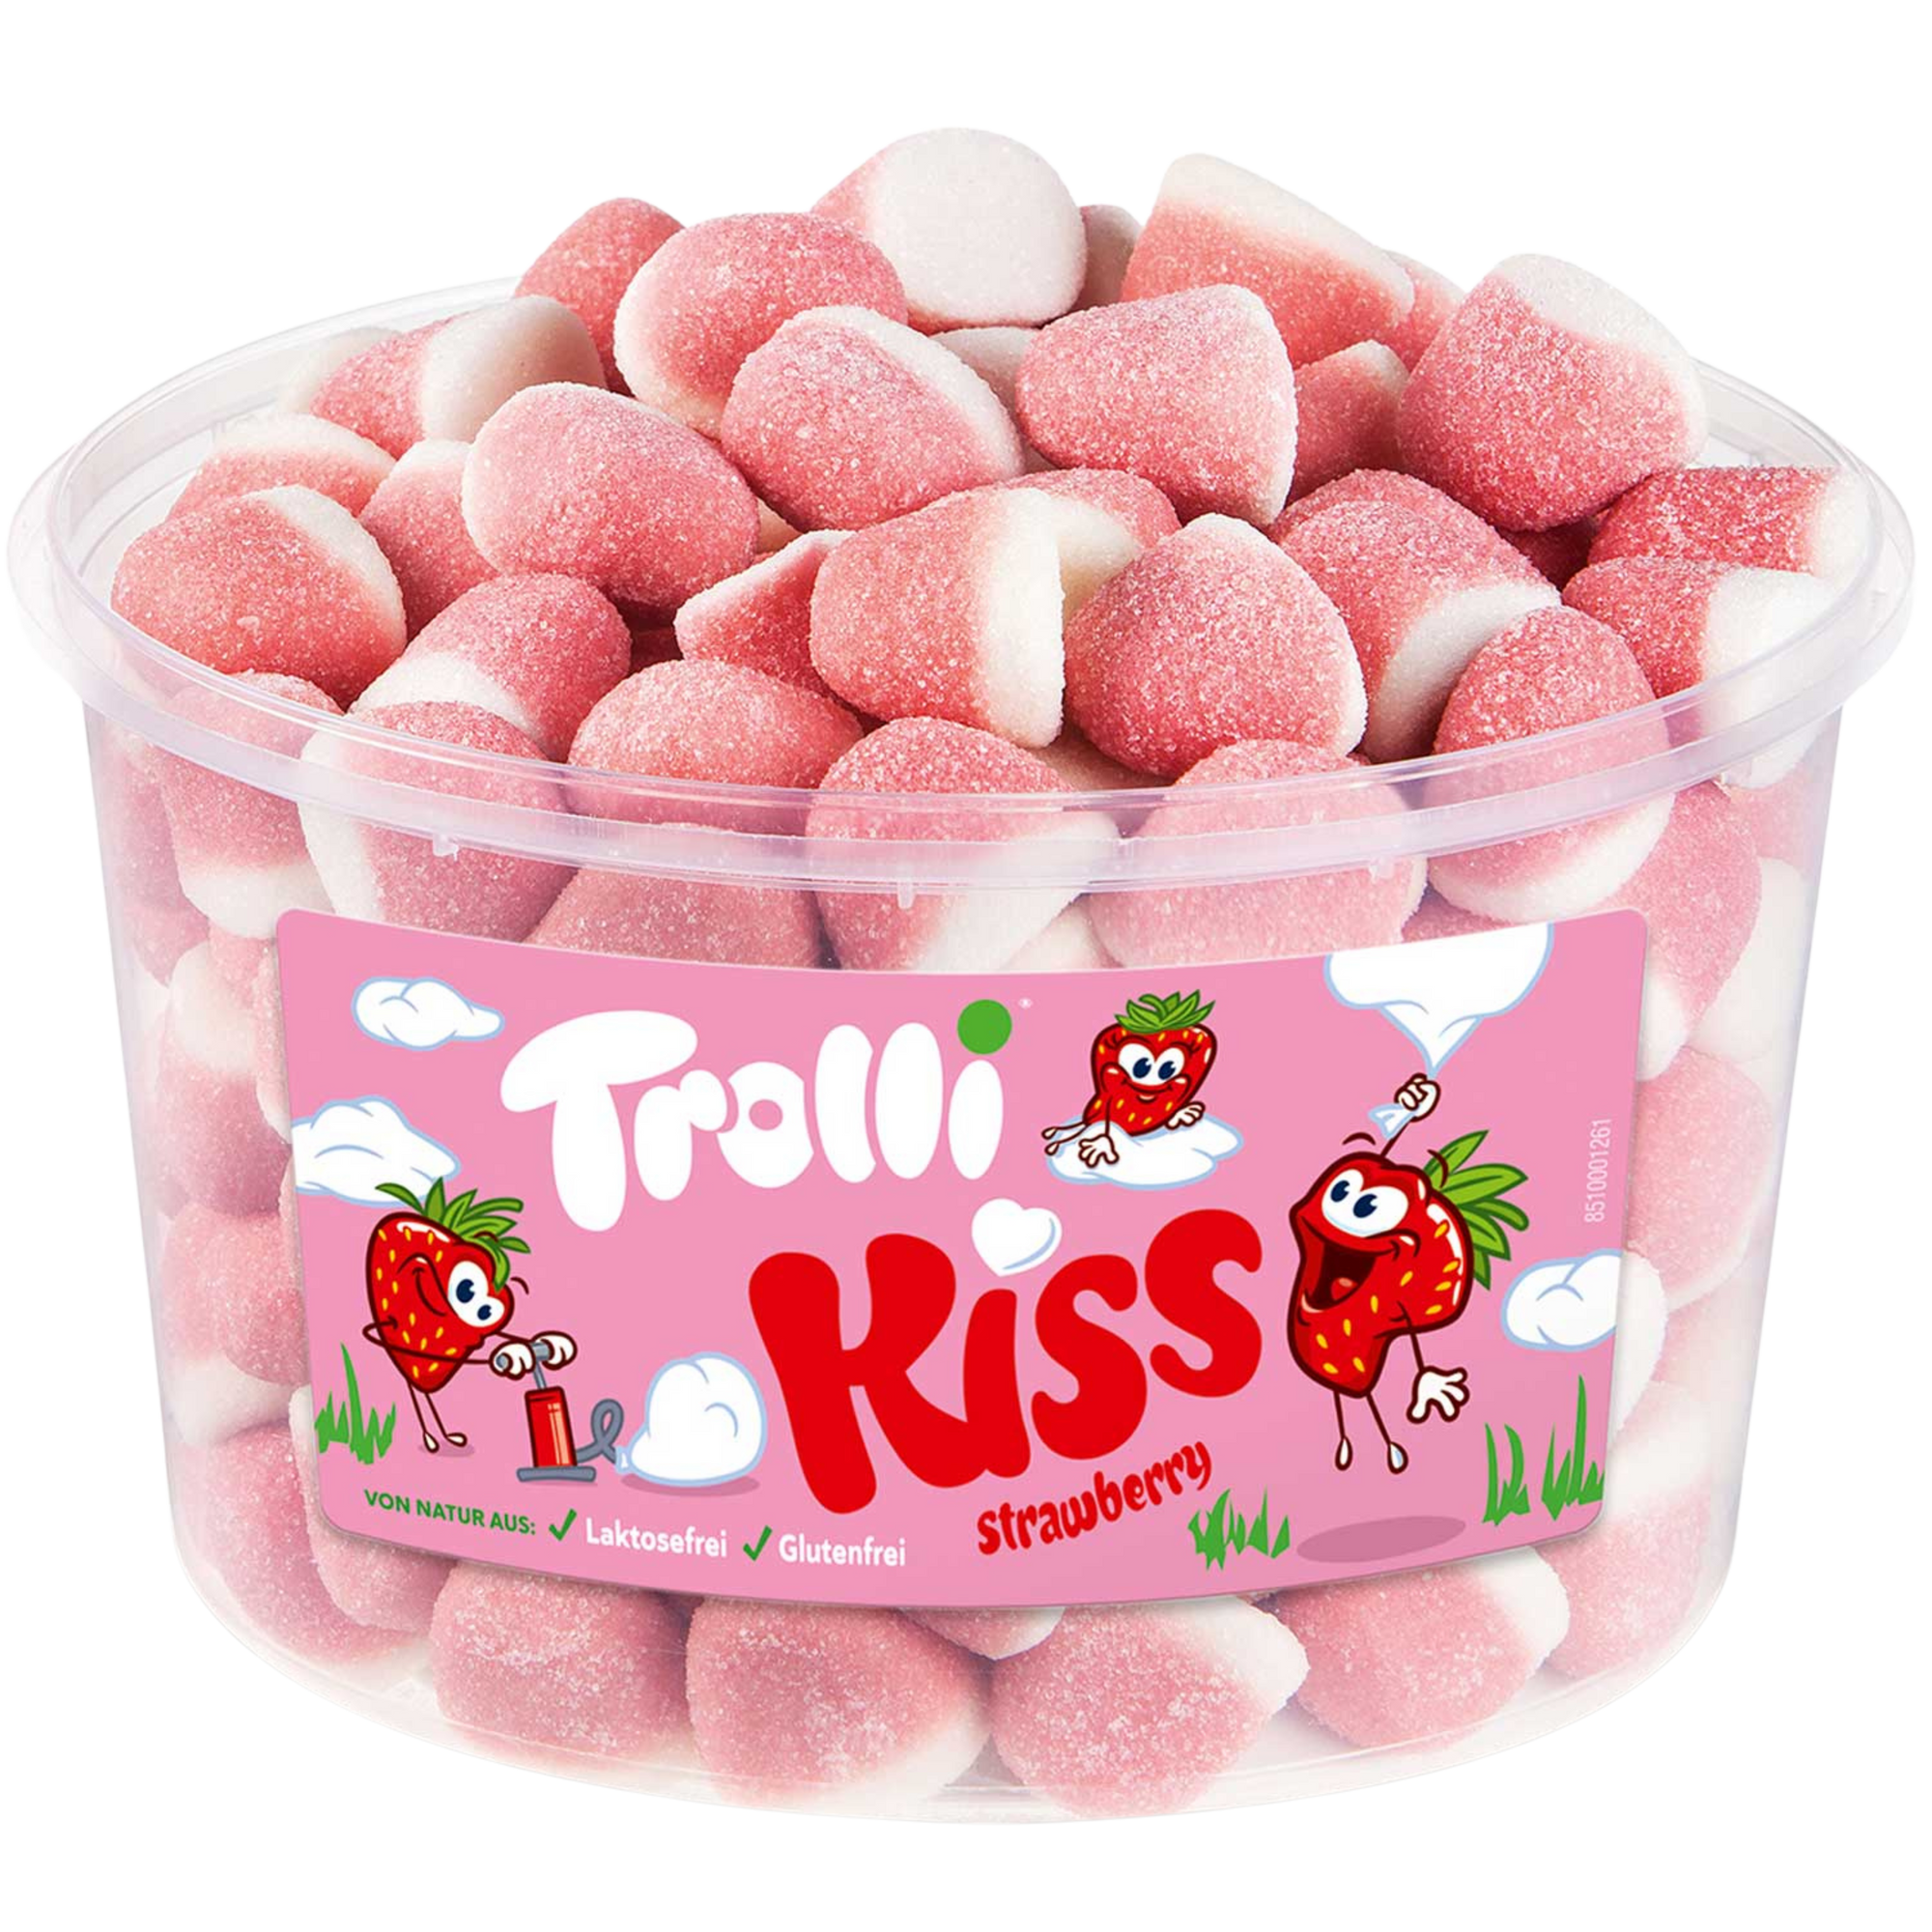 Trolli Strawberry Kiss 1.7kg - Nammi.net